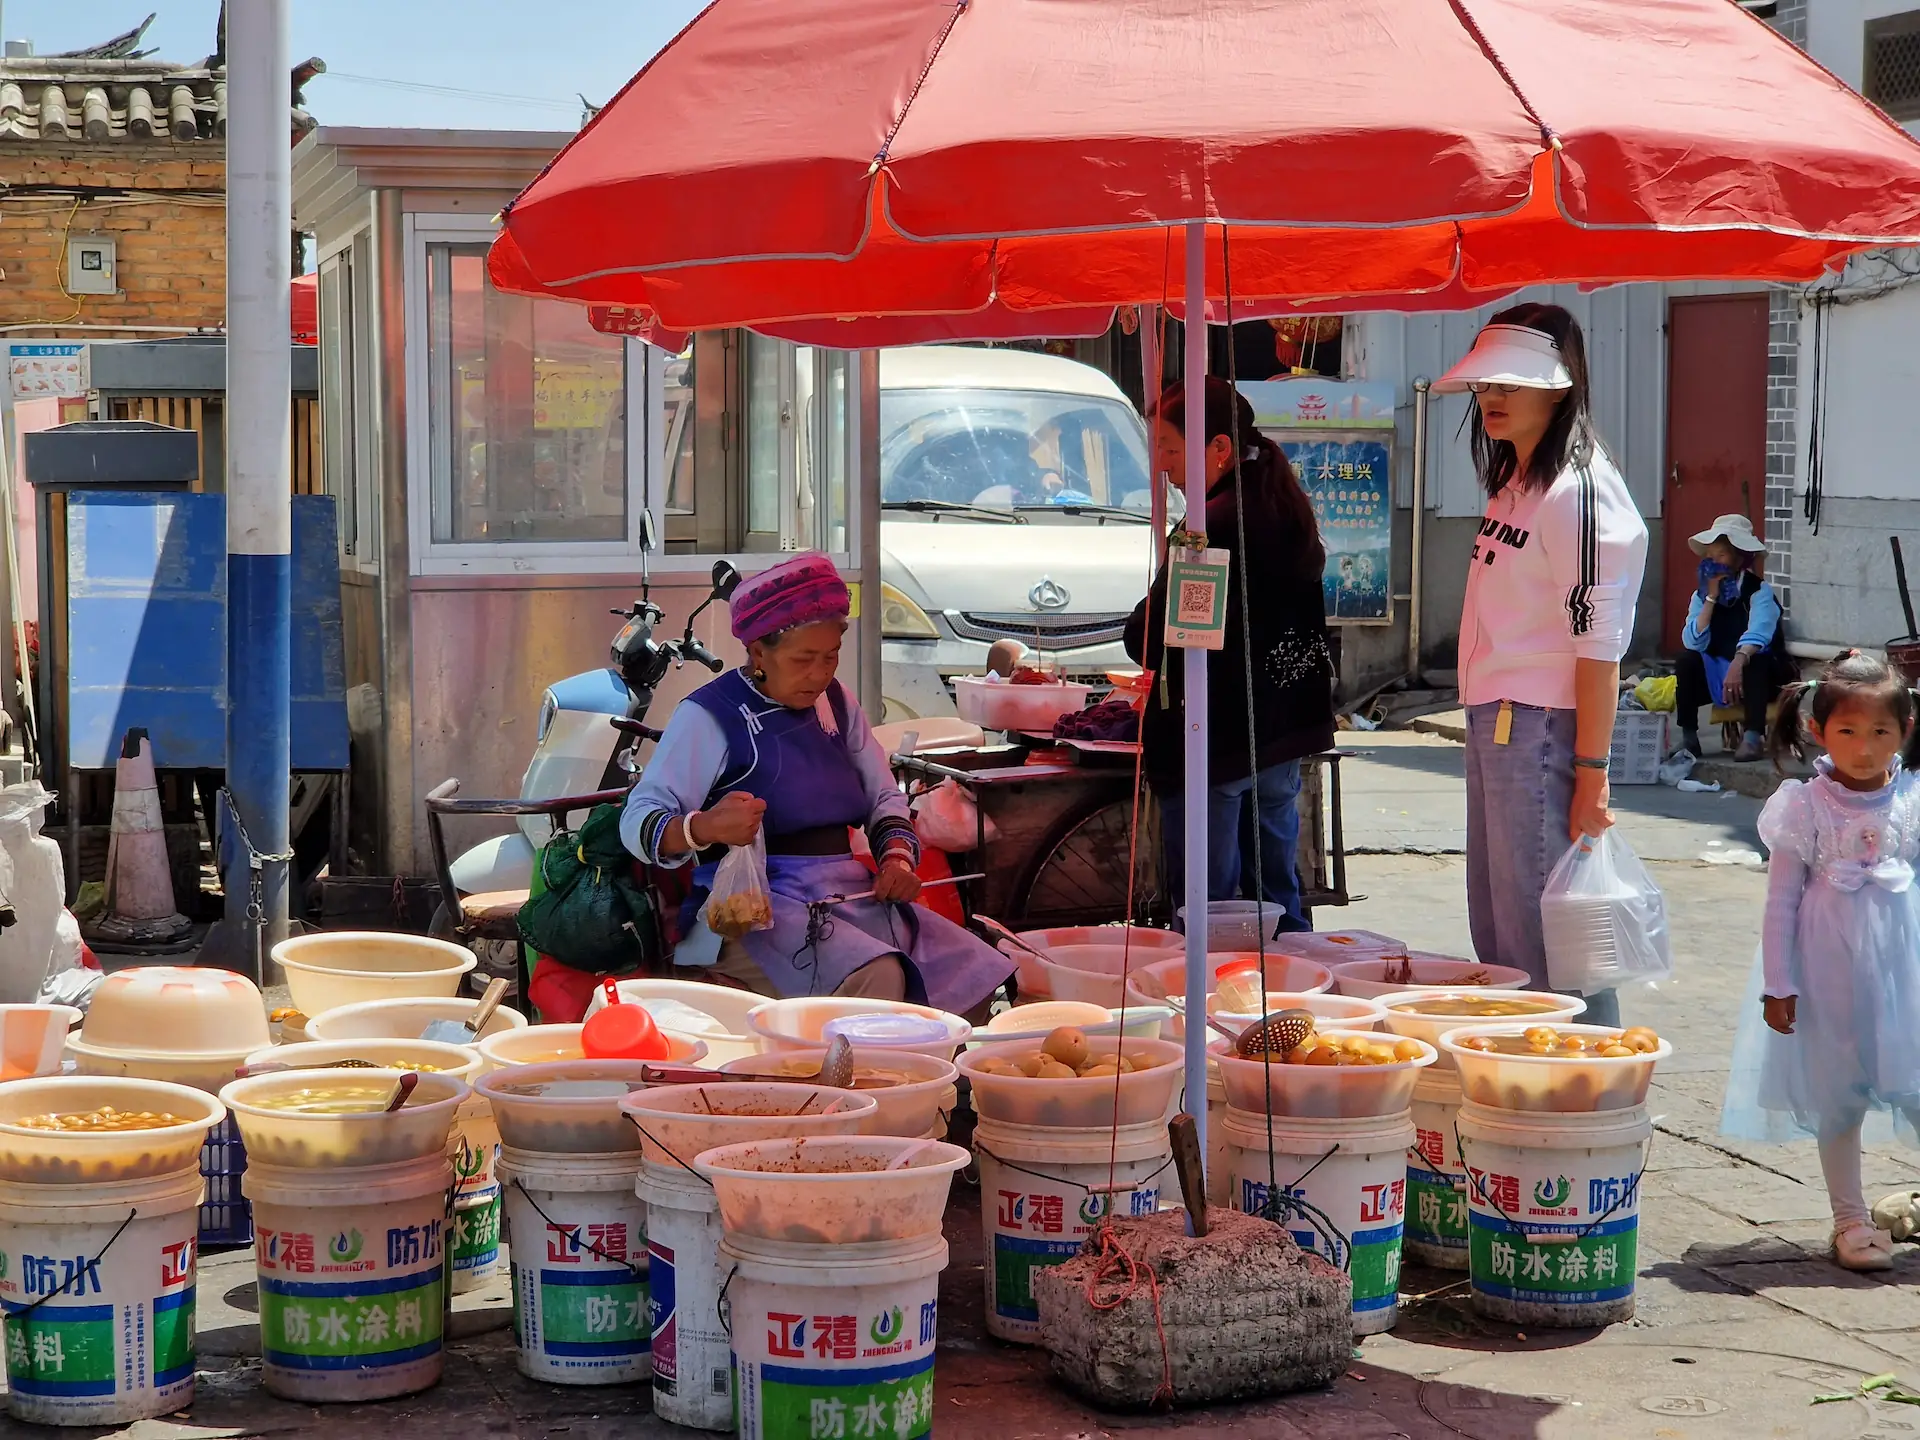 Une vielle vendeuse est assise au milieu de ses marchandises. Elle porte un habit bleu et une coiffe similaire à la première vendeuse.